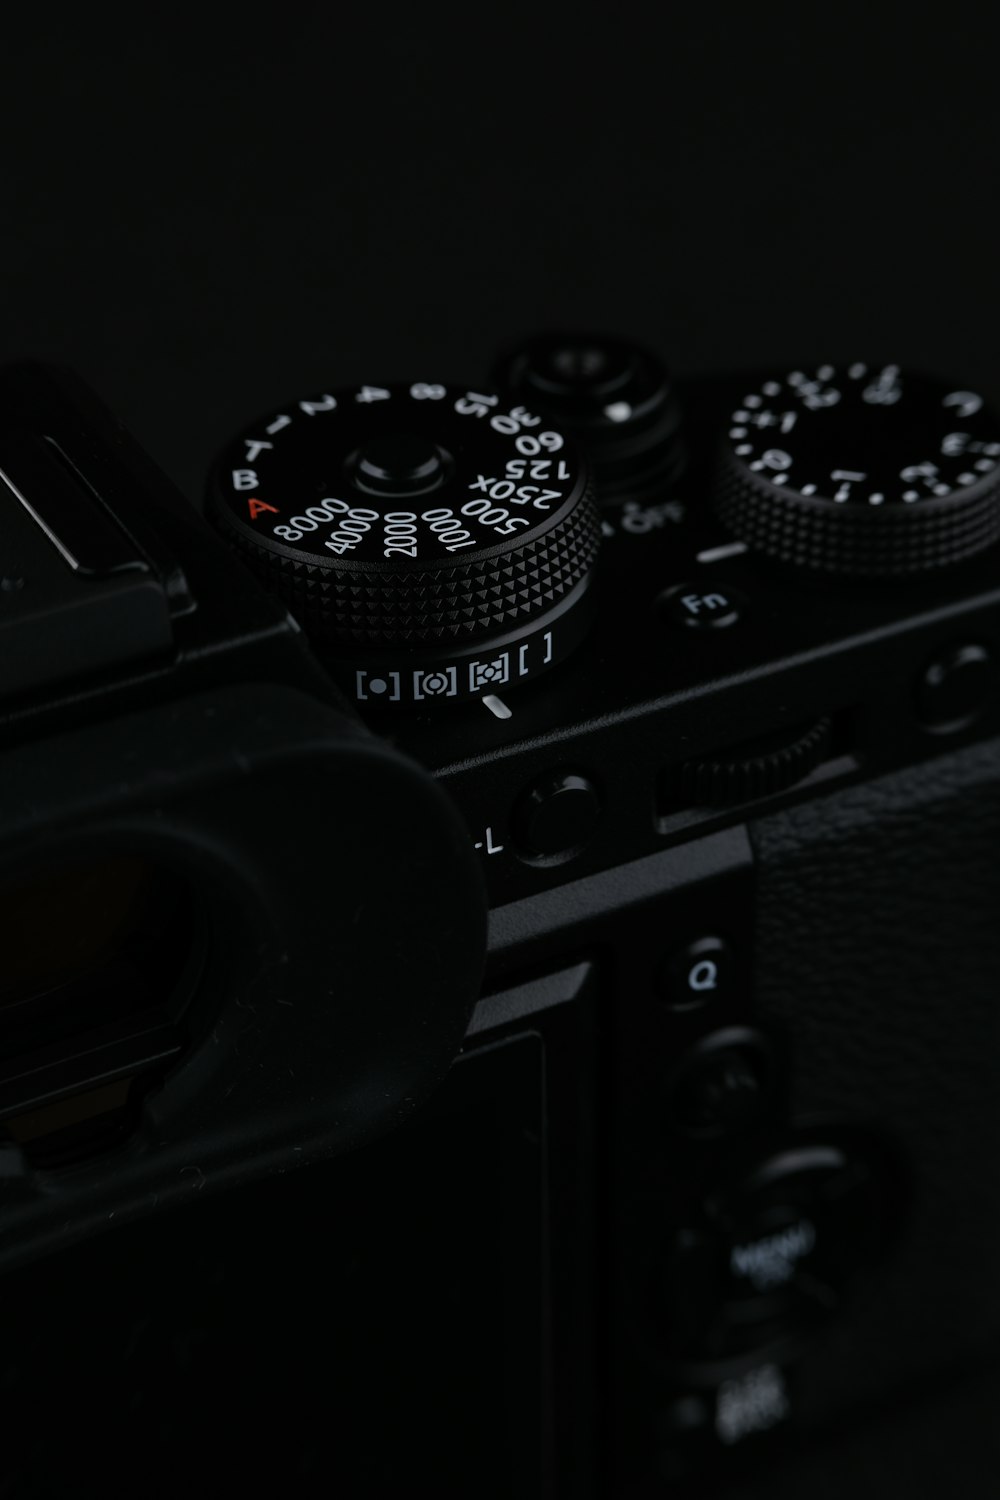 Fotocamera DSLR nera e argento